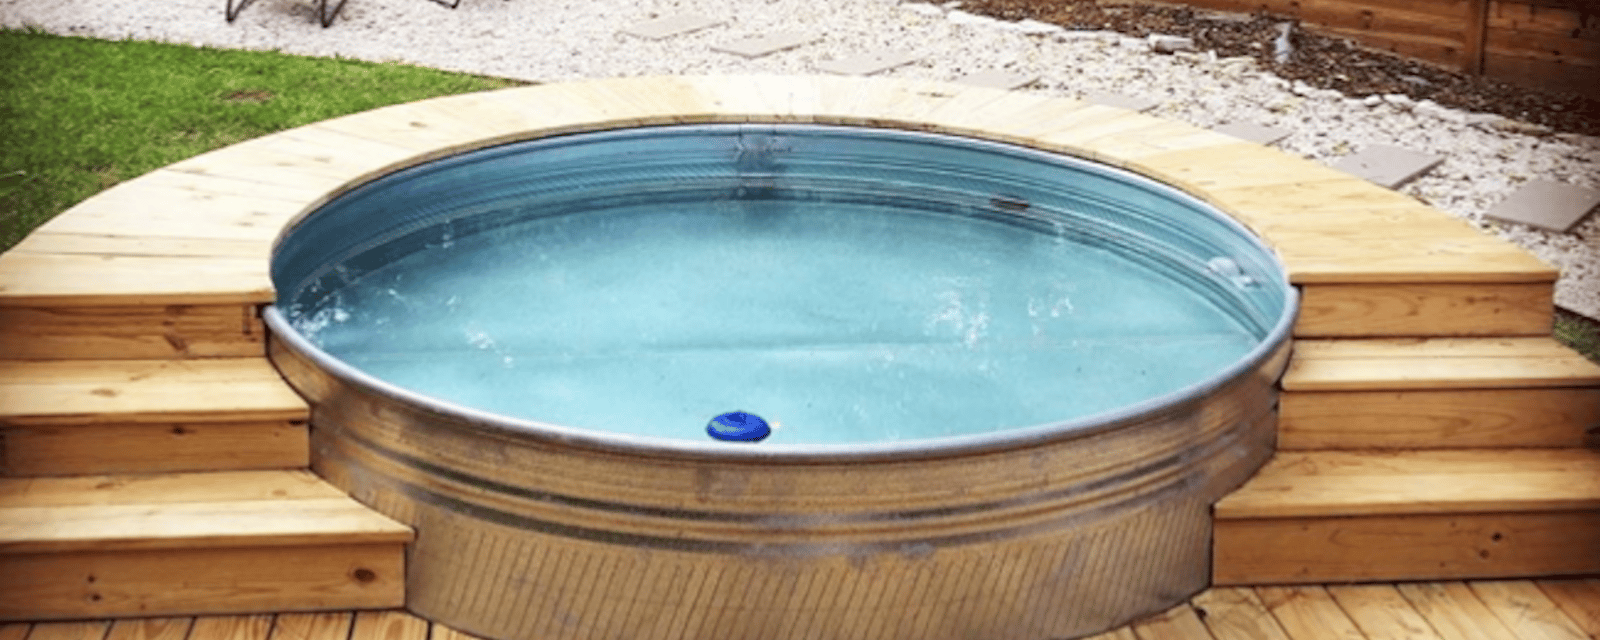 Comment faire une piscine de avec un réservoir de stockage